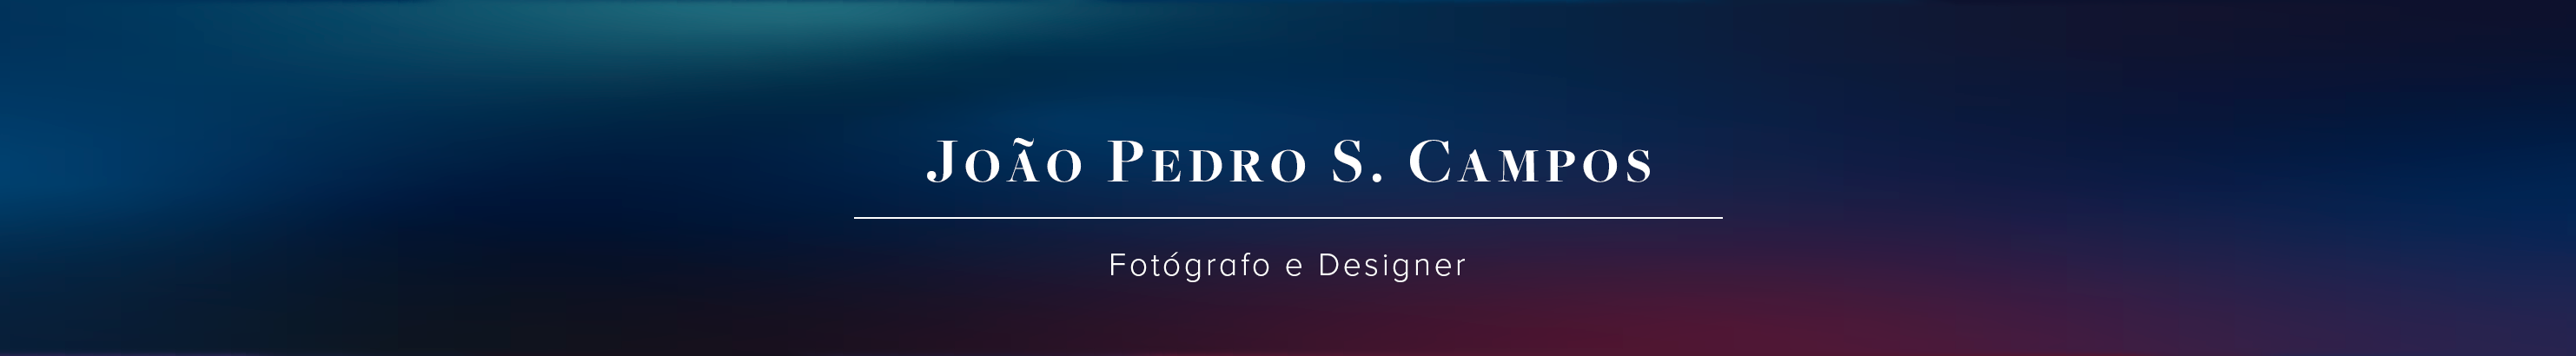 Banner de perfil de João Pedro S. Campos